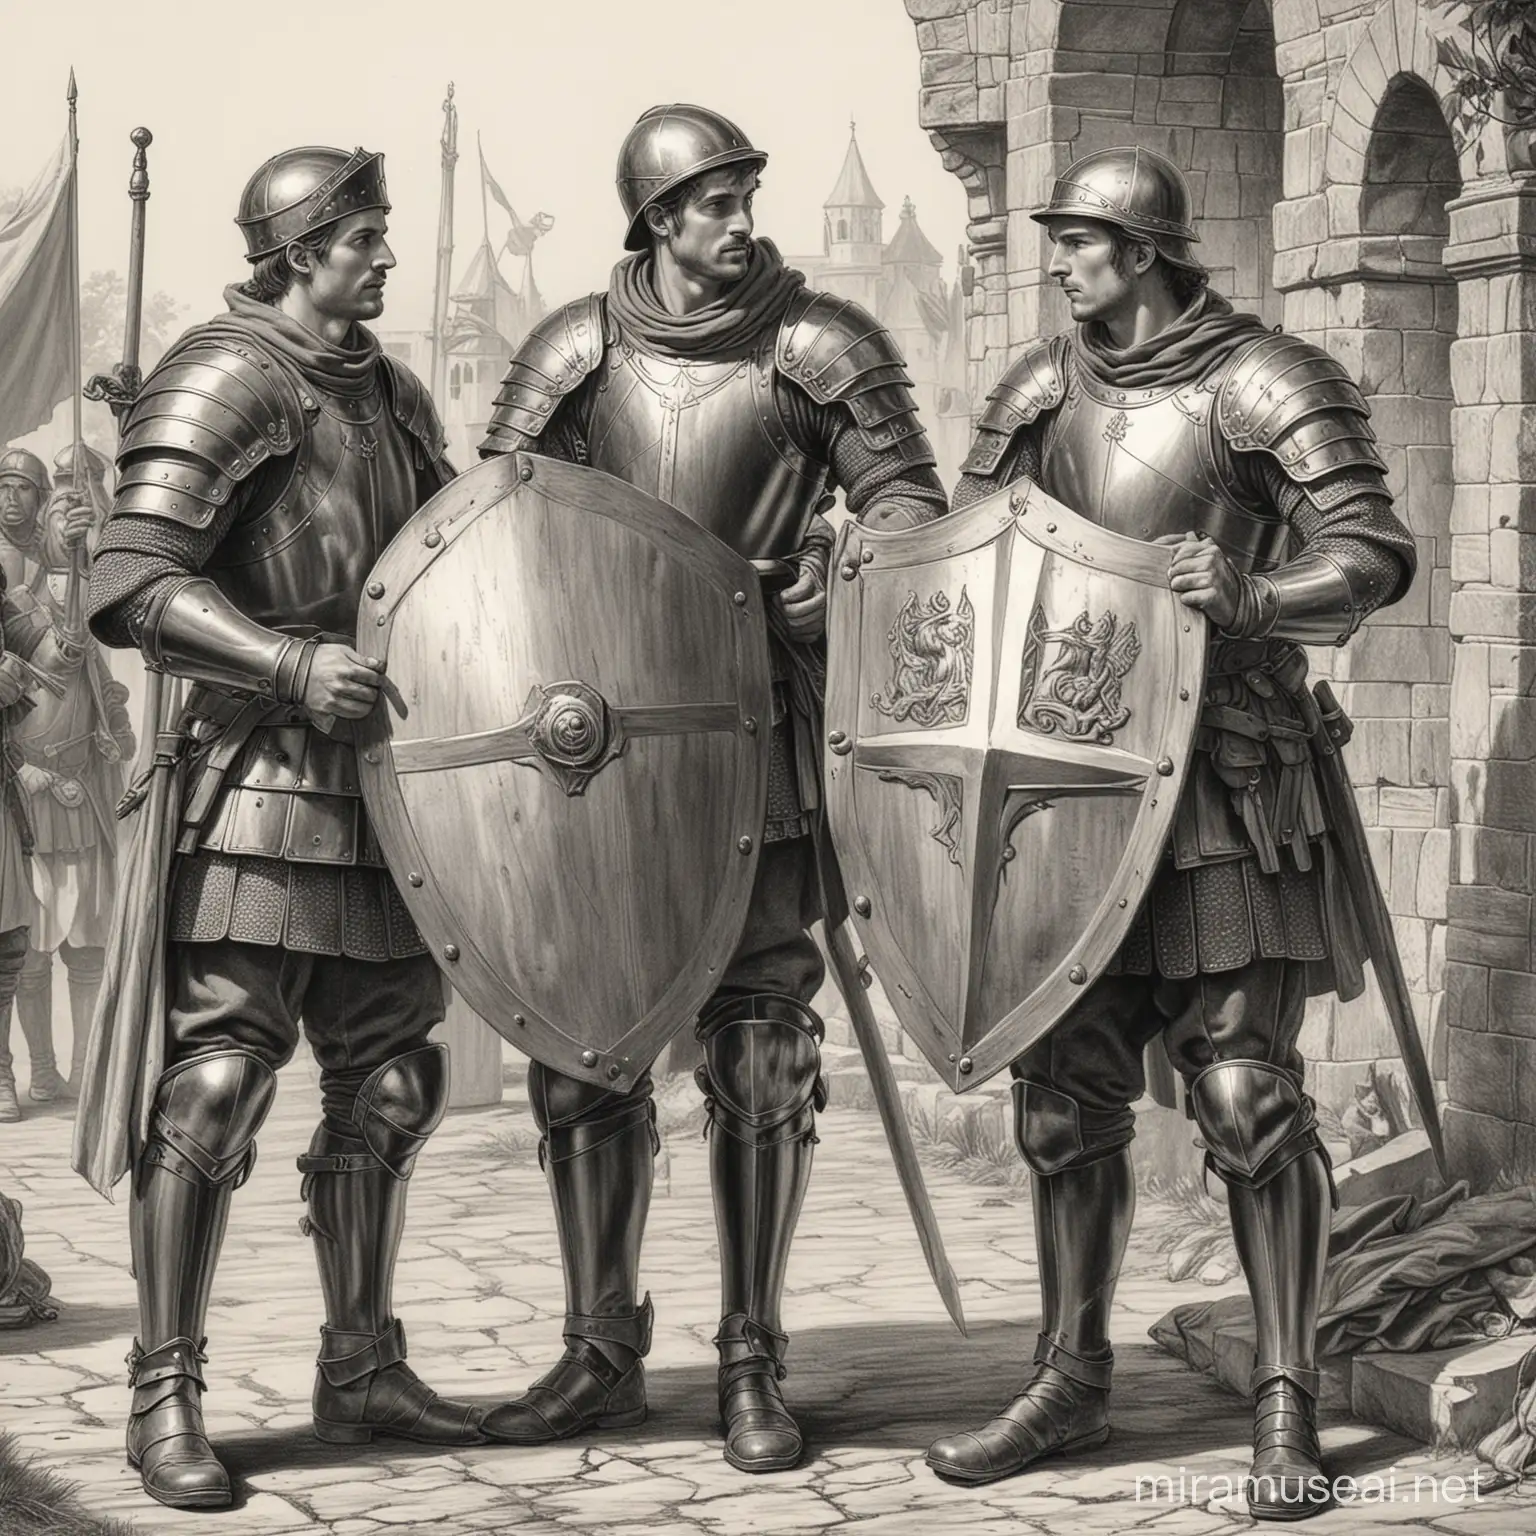 Dibujo en blanco y negro estilo medieval de dos soldados, uno colocándose la armadura y otro limpiando su escudo